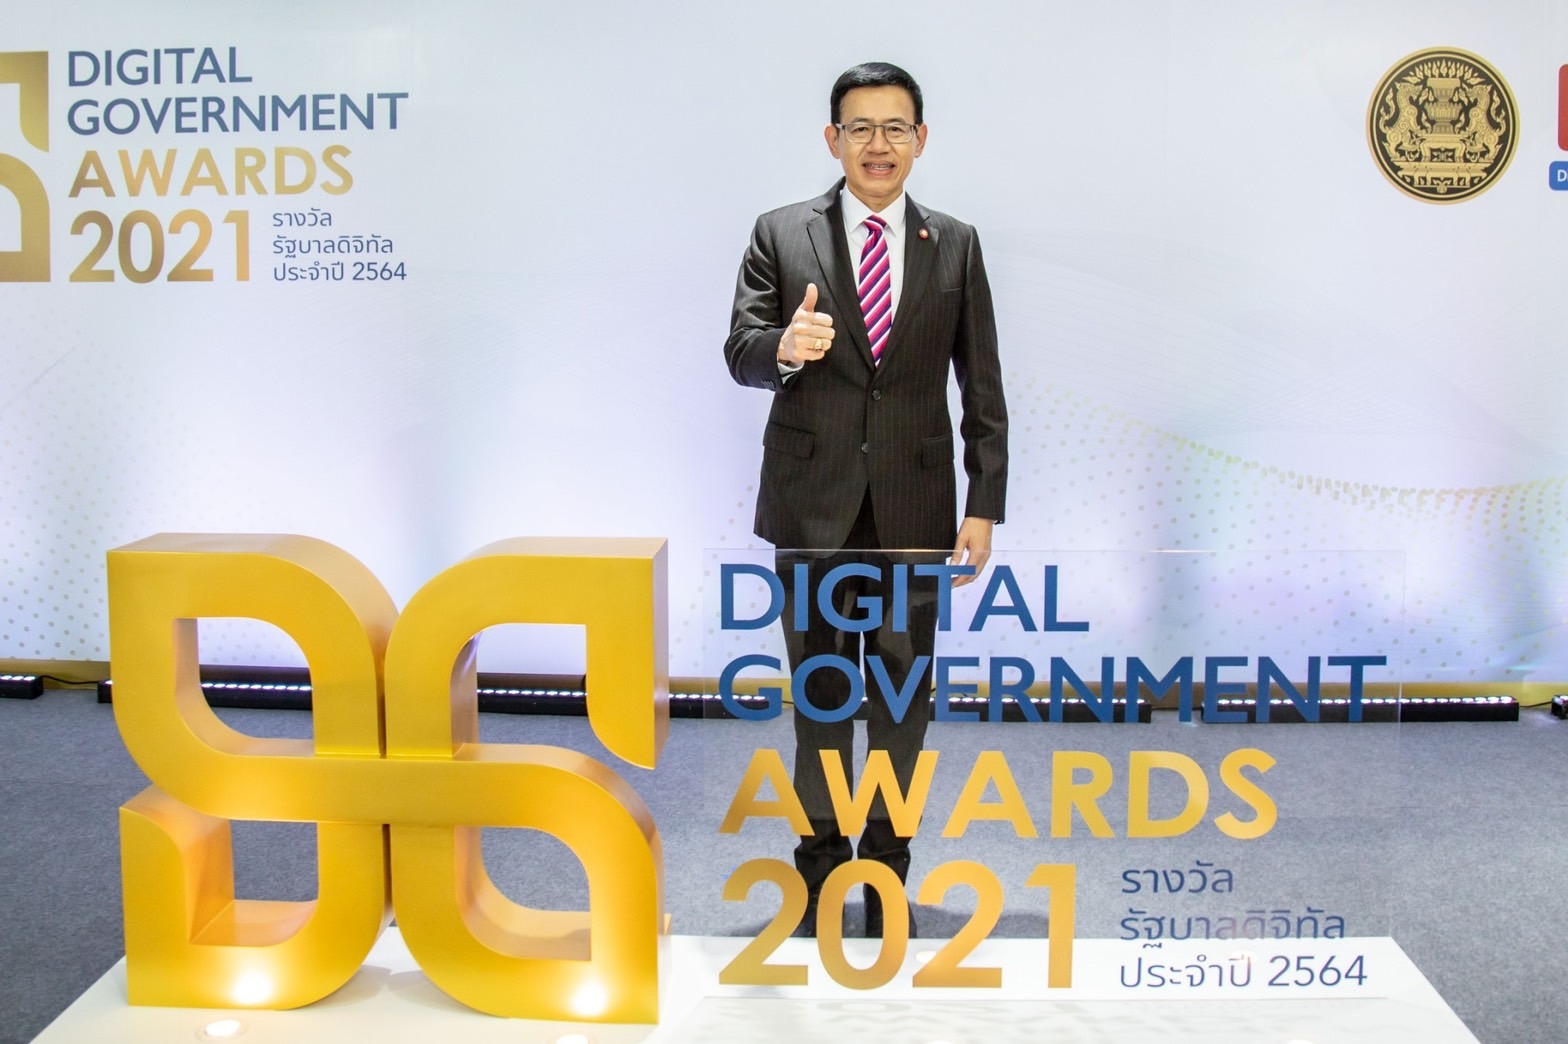 สำนักงาน คปภ. ก้าวสู่ผู้นำการให้บริการดิจิทัลภาครัฐ คว้ารางวัลในงานรัฐบาลดิจิทัล ประจำปี 2564 “DG Awards 2021”